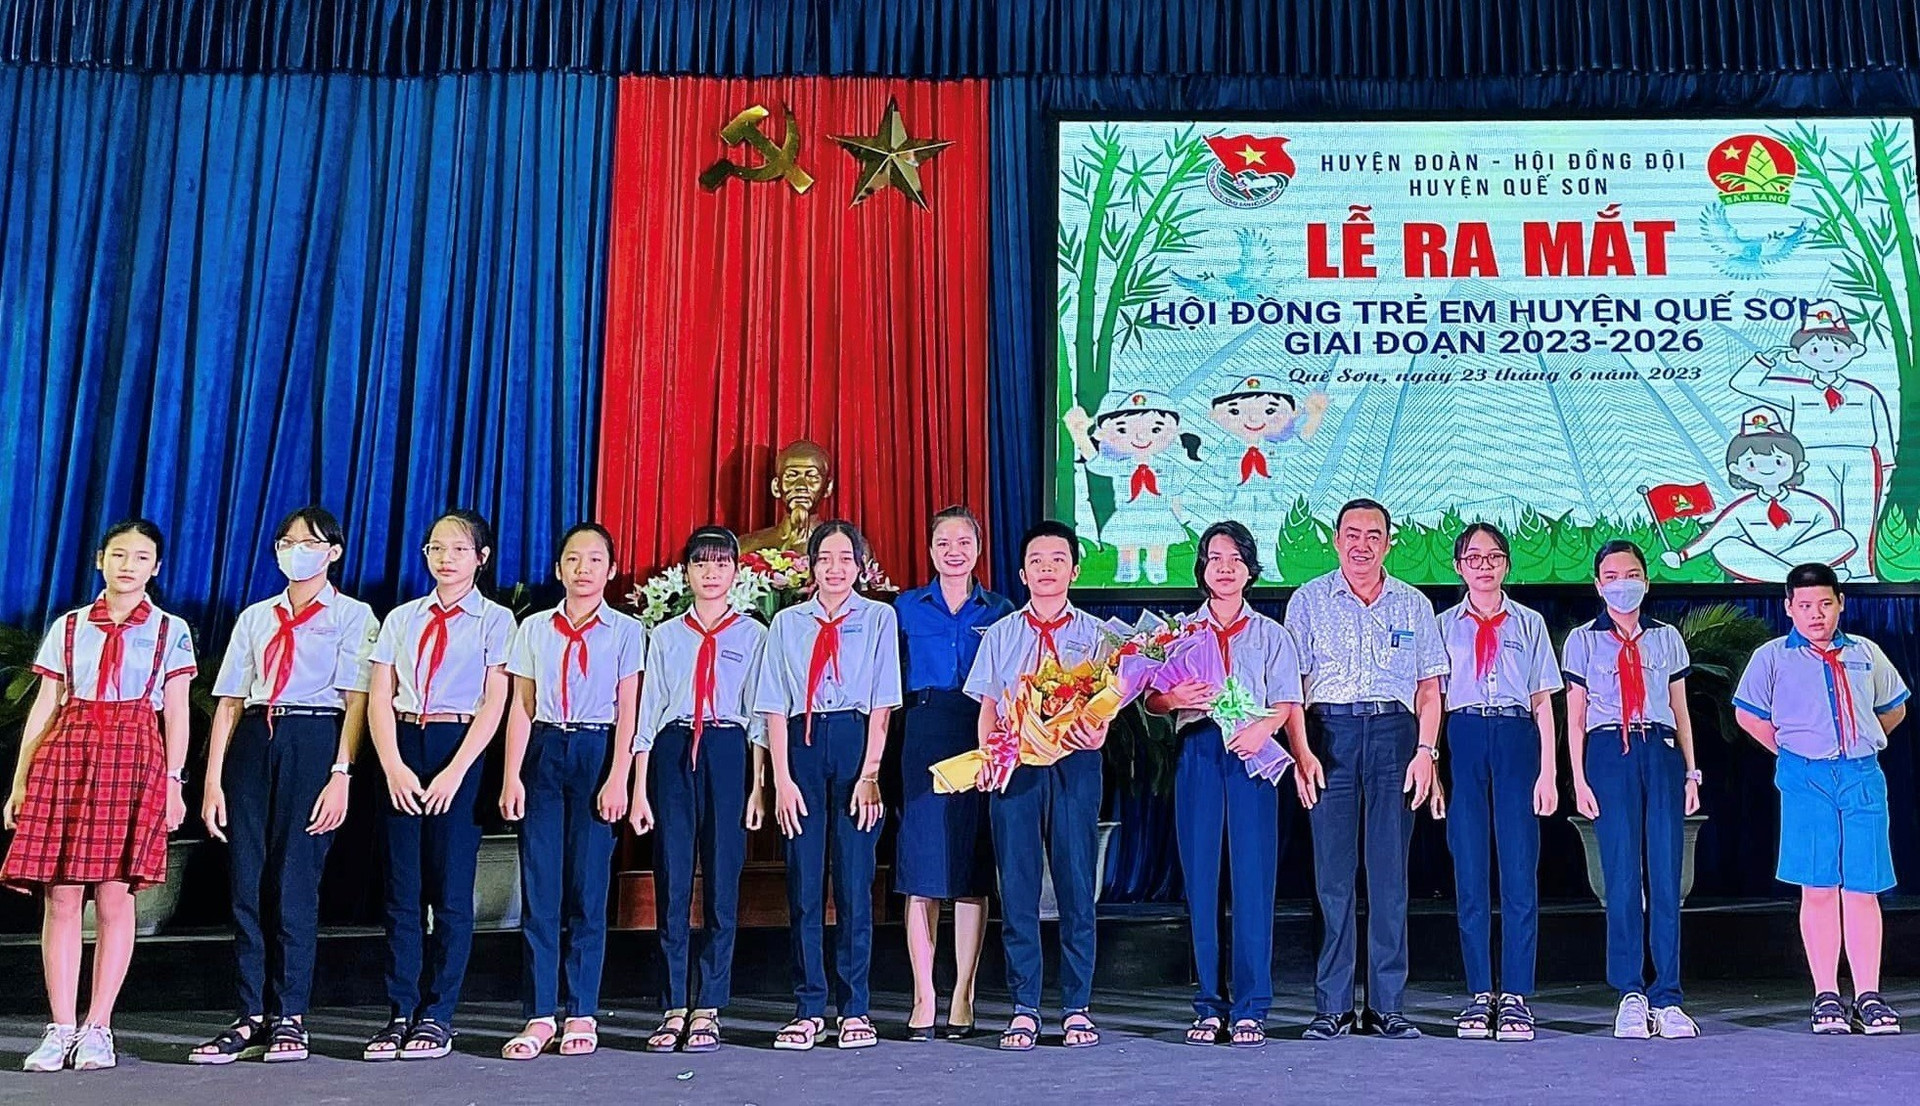 Lãnh đạo huyện tặng hoa chúc mừng Hội đồng trẻ em huyện Quế Sơn. Ảnh: A.T